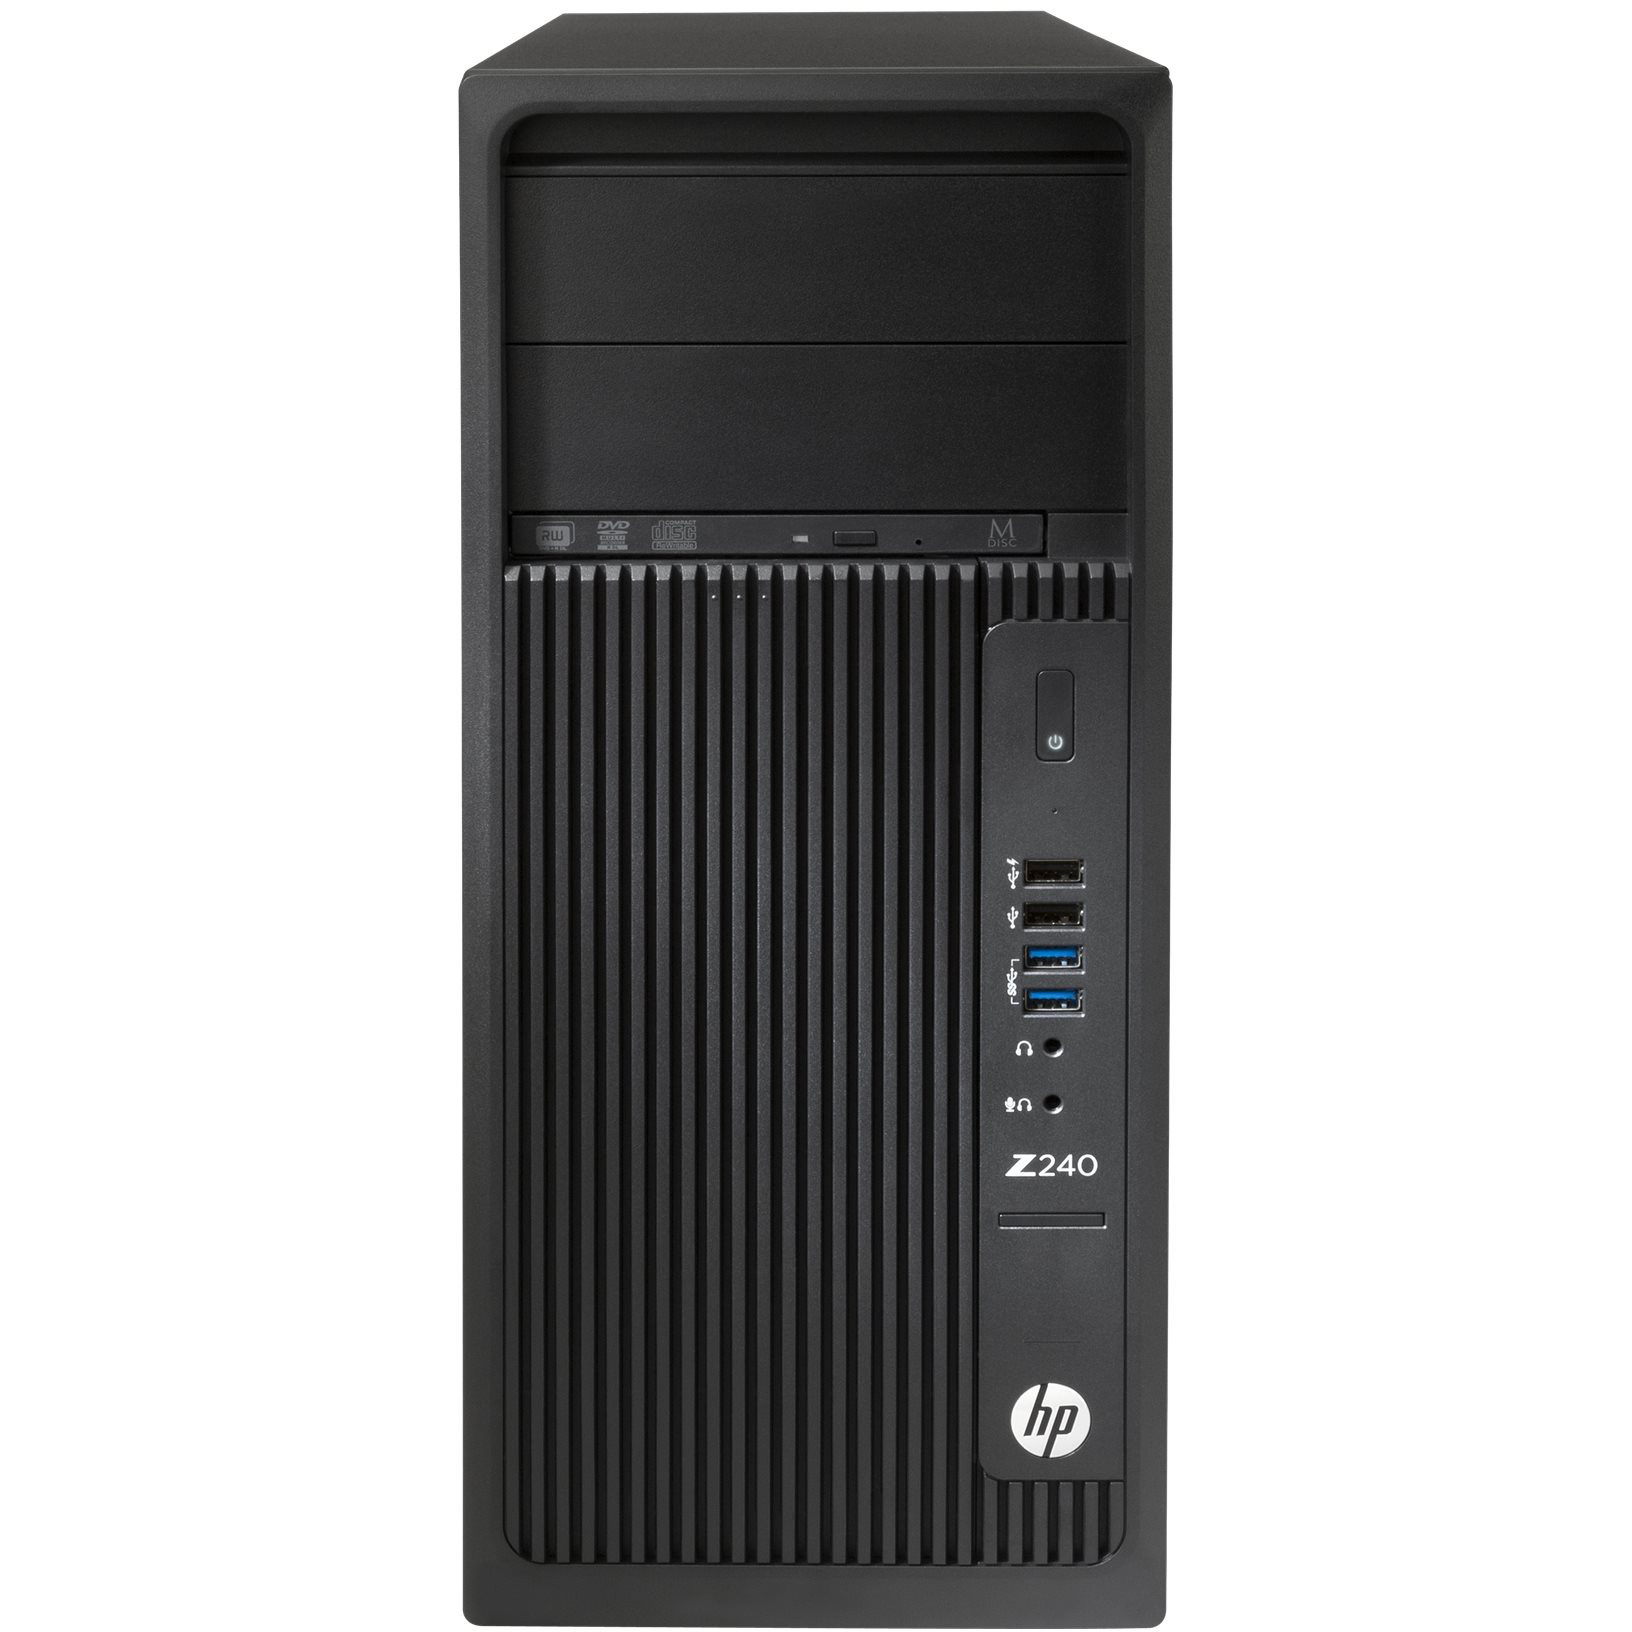  Sistem Desktop HP Z240T, Intel Core i7-6700, 8GB DDR4, HDD 1TB, Intel HD Graphics, Windows 10 Pro 